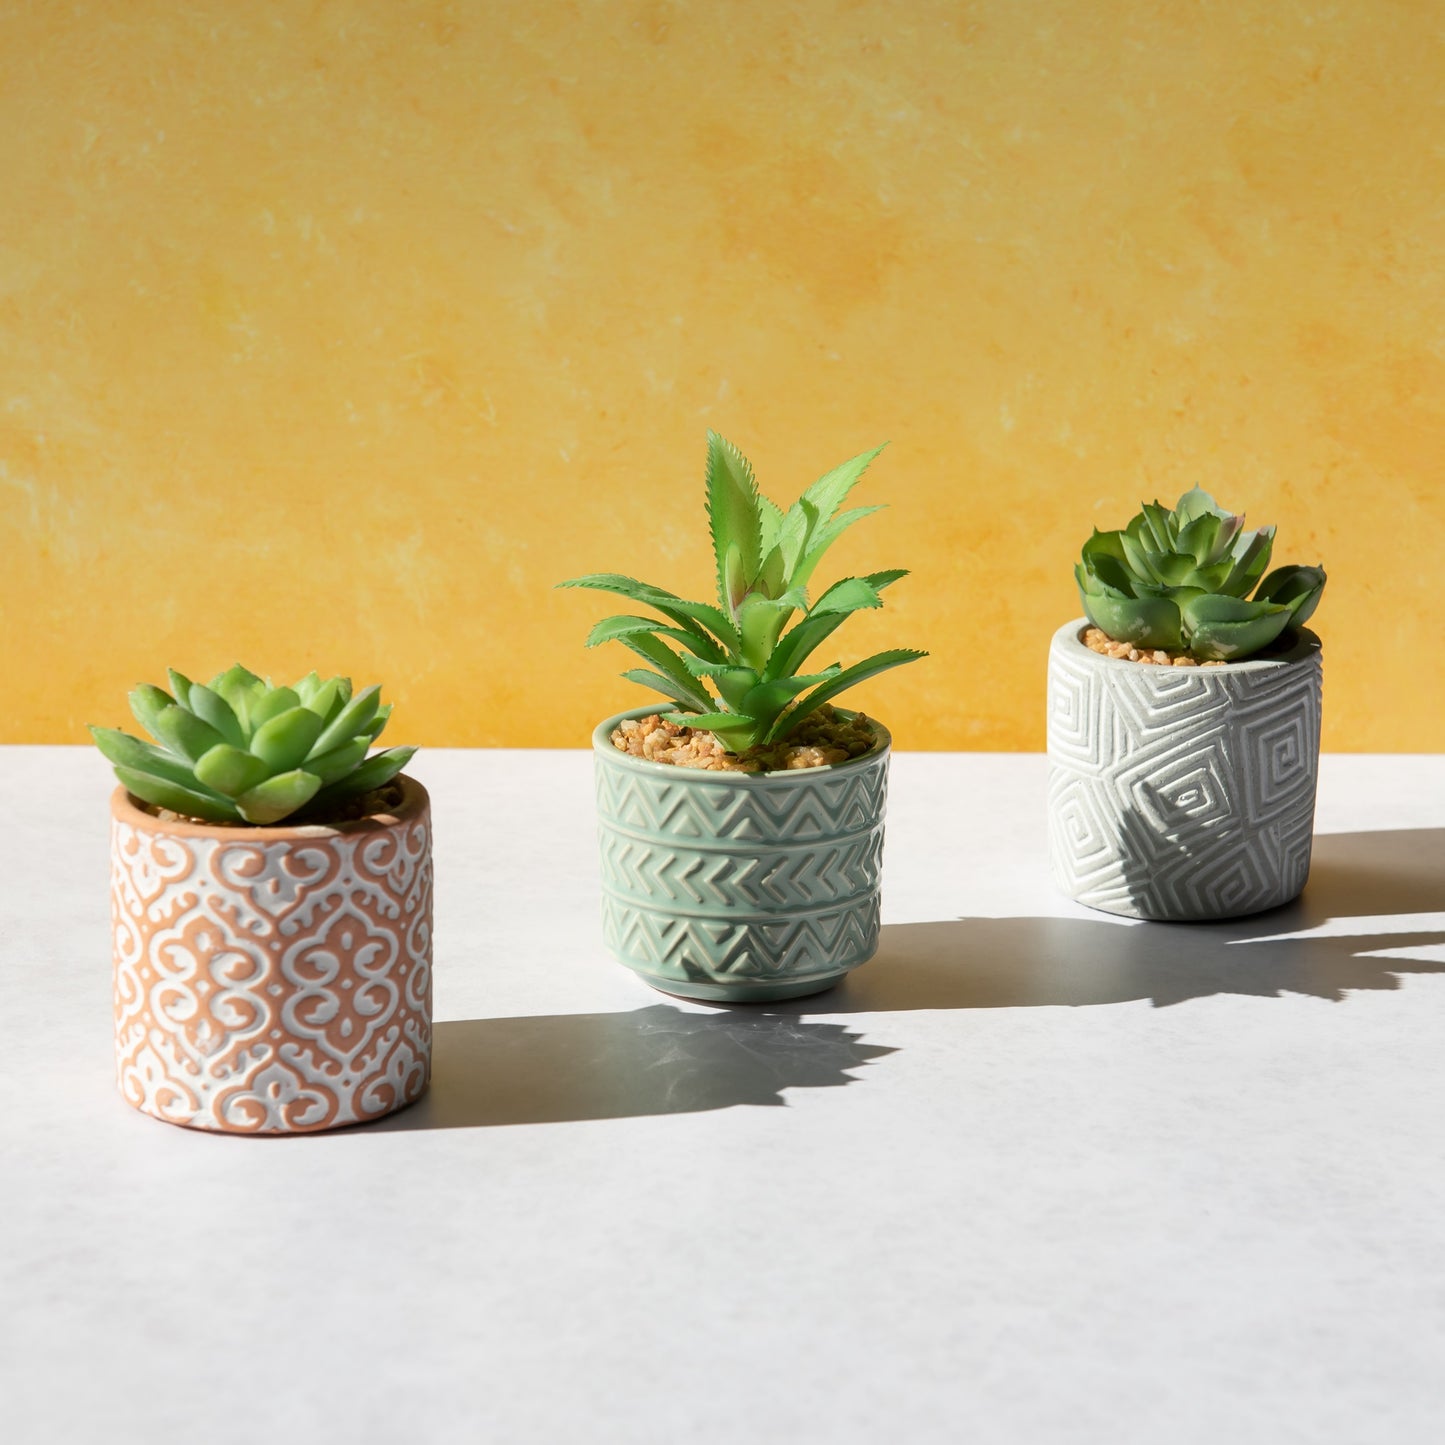 Set of 3 Artificial Succulent Plants in Moroccan Tile Plant Pots